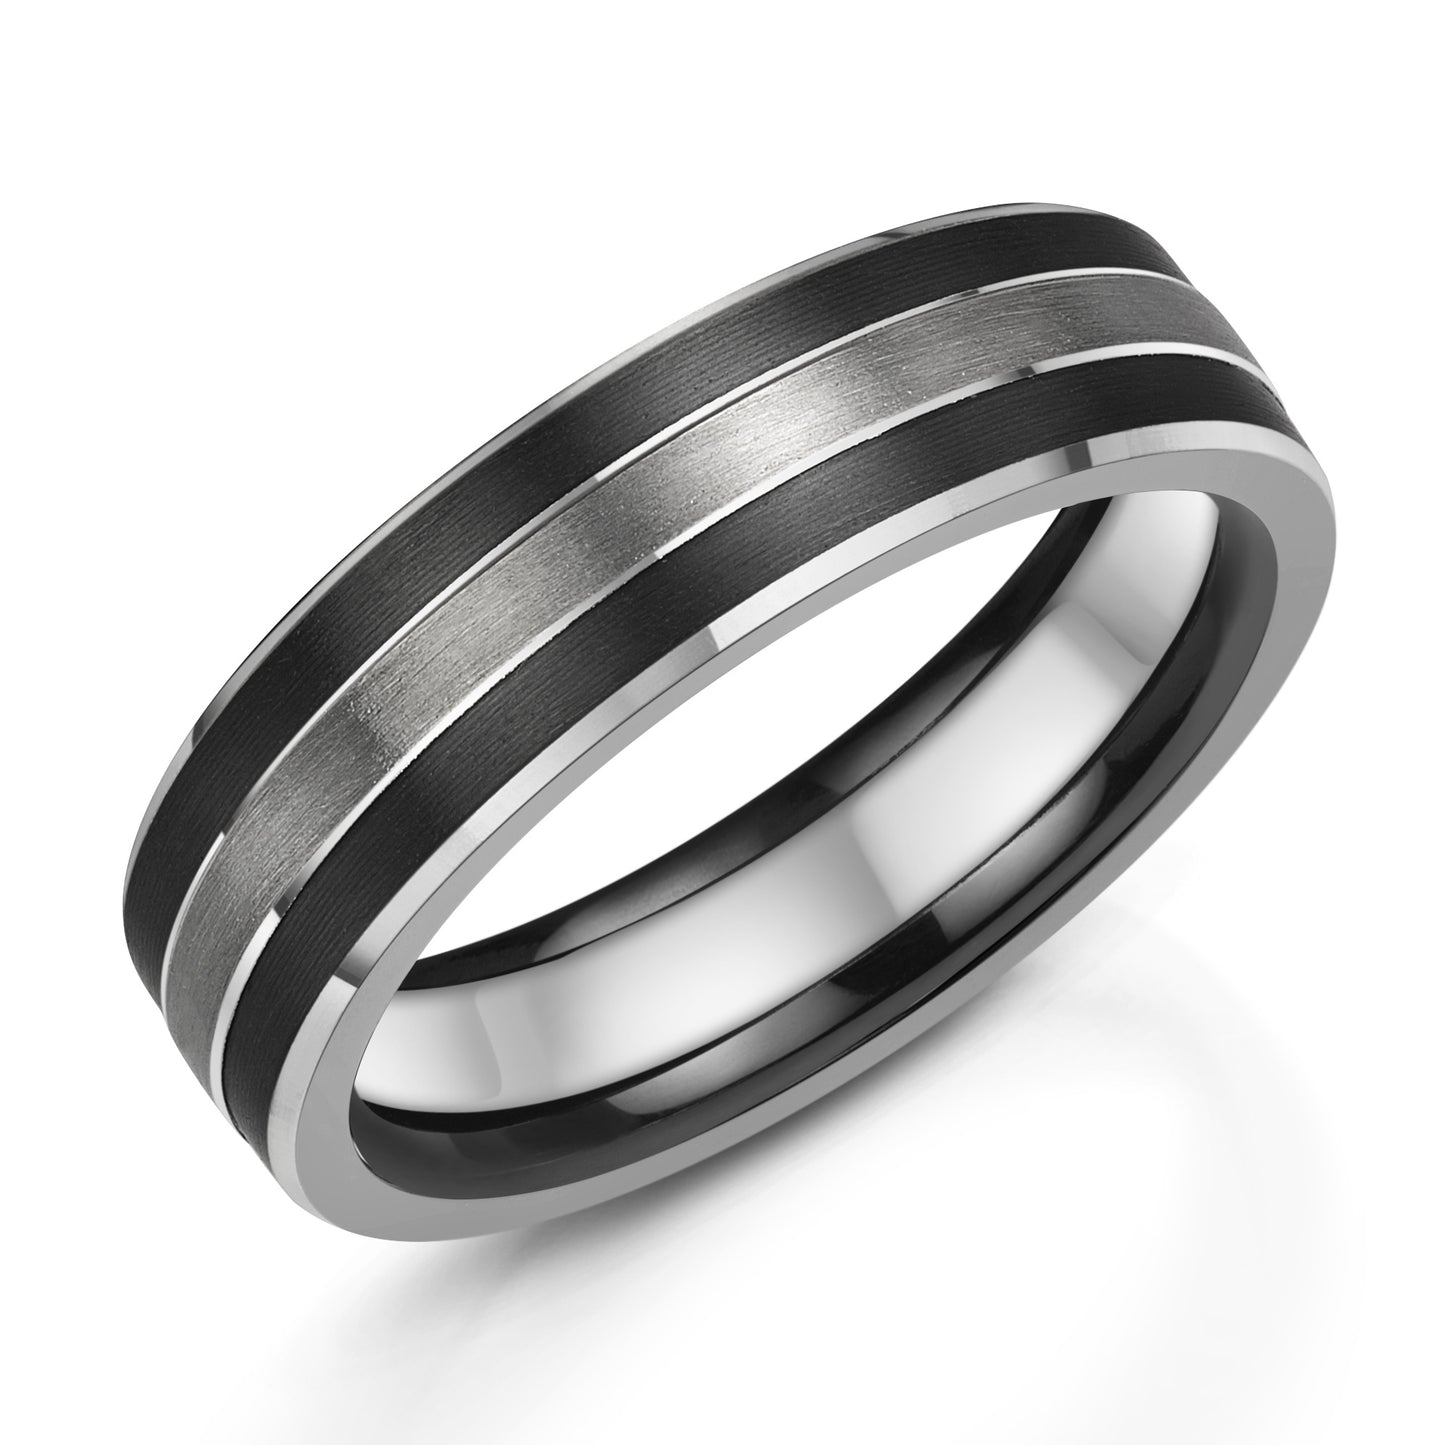 Zedd Ring Platinum 6mm ring with black Zirconium